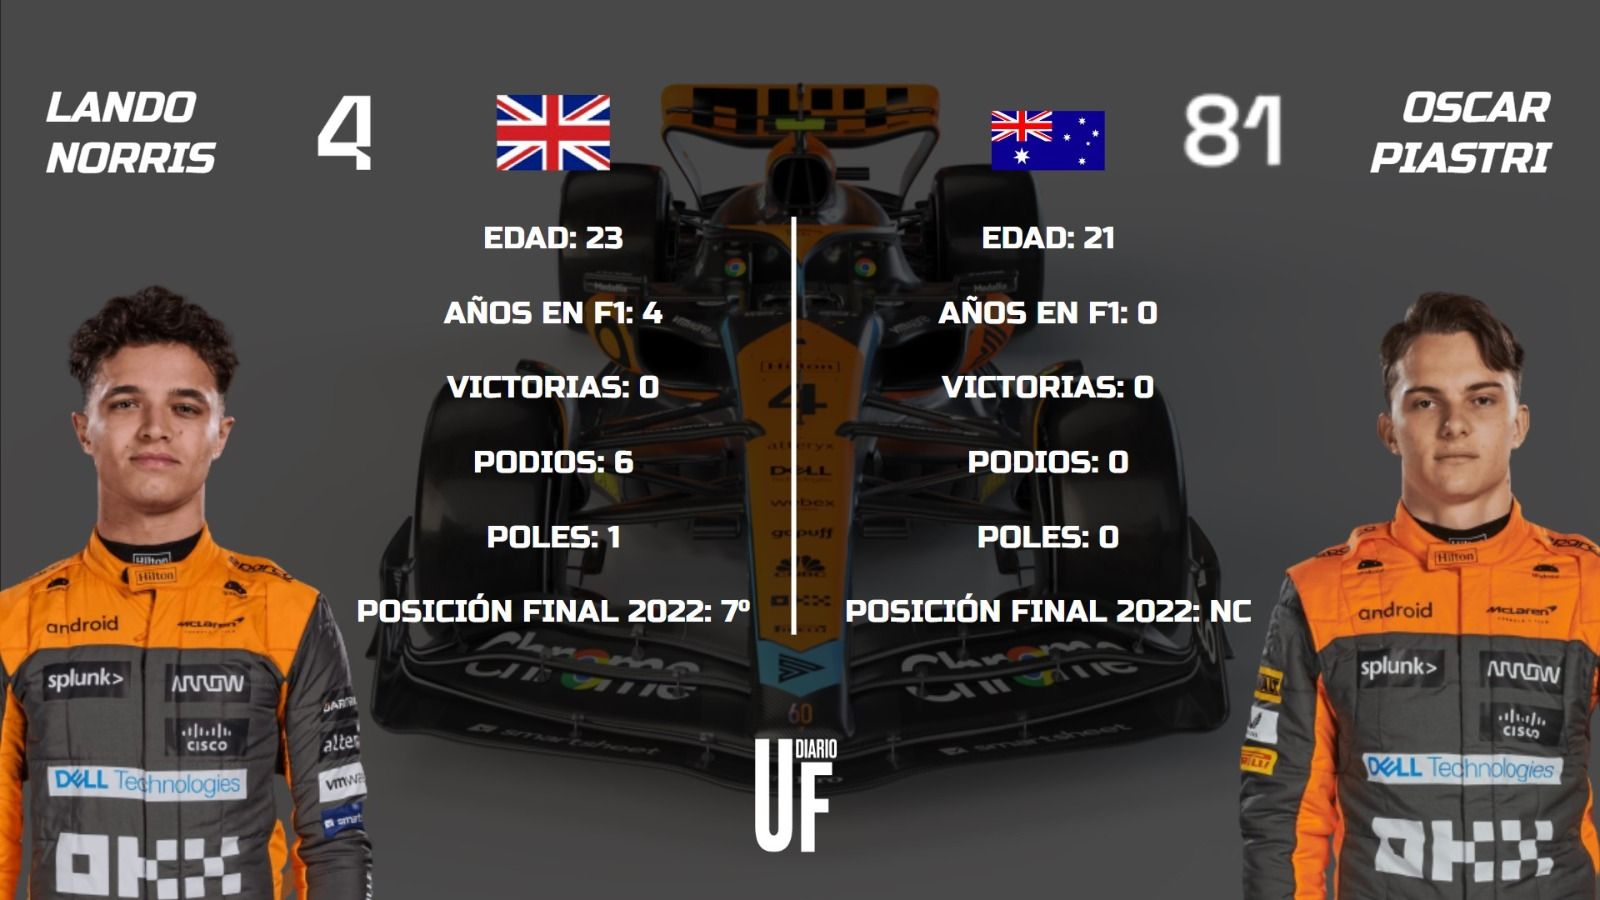 Datos de los pilotos del equipo McLaren